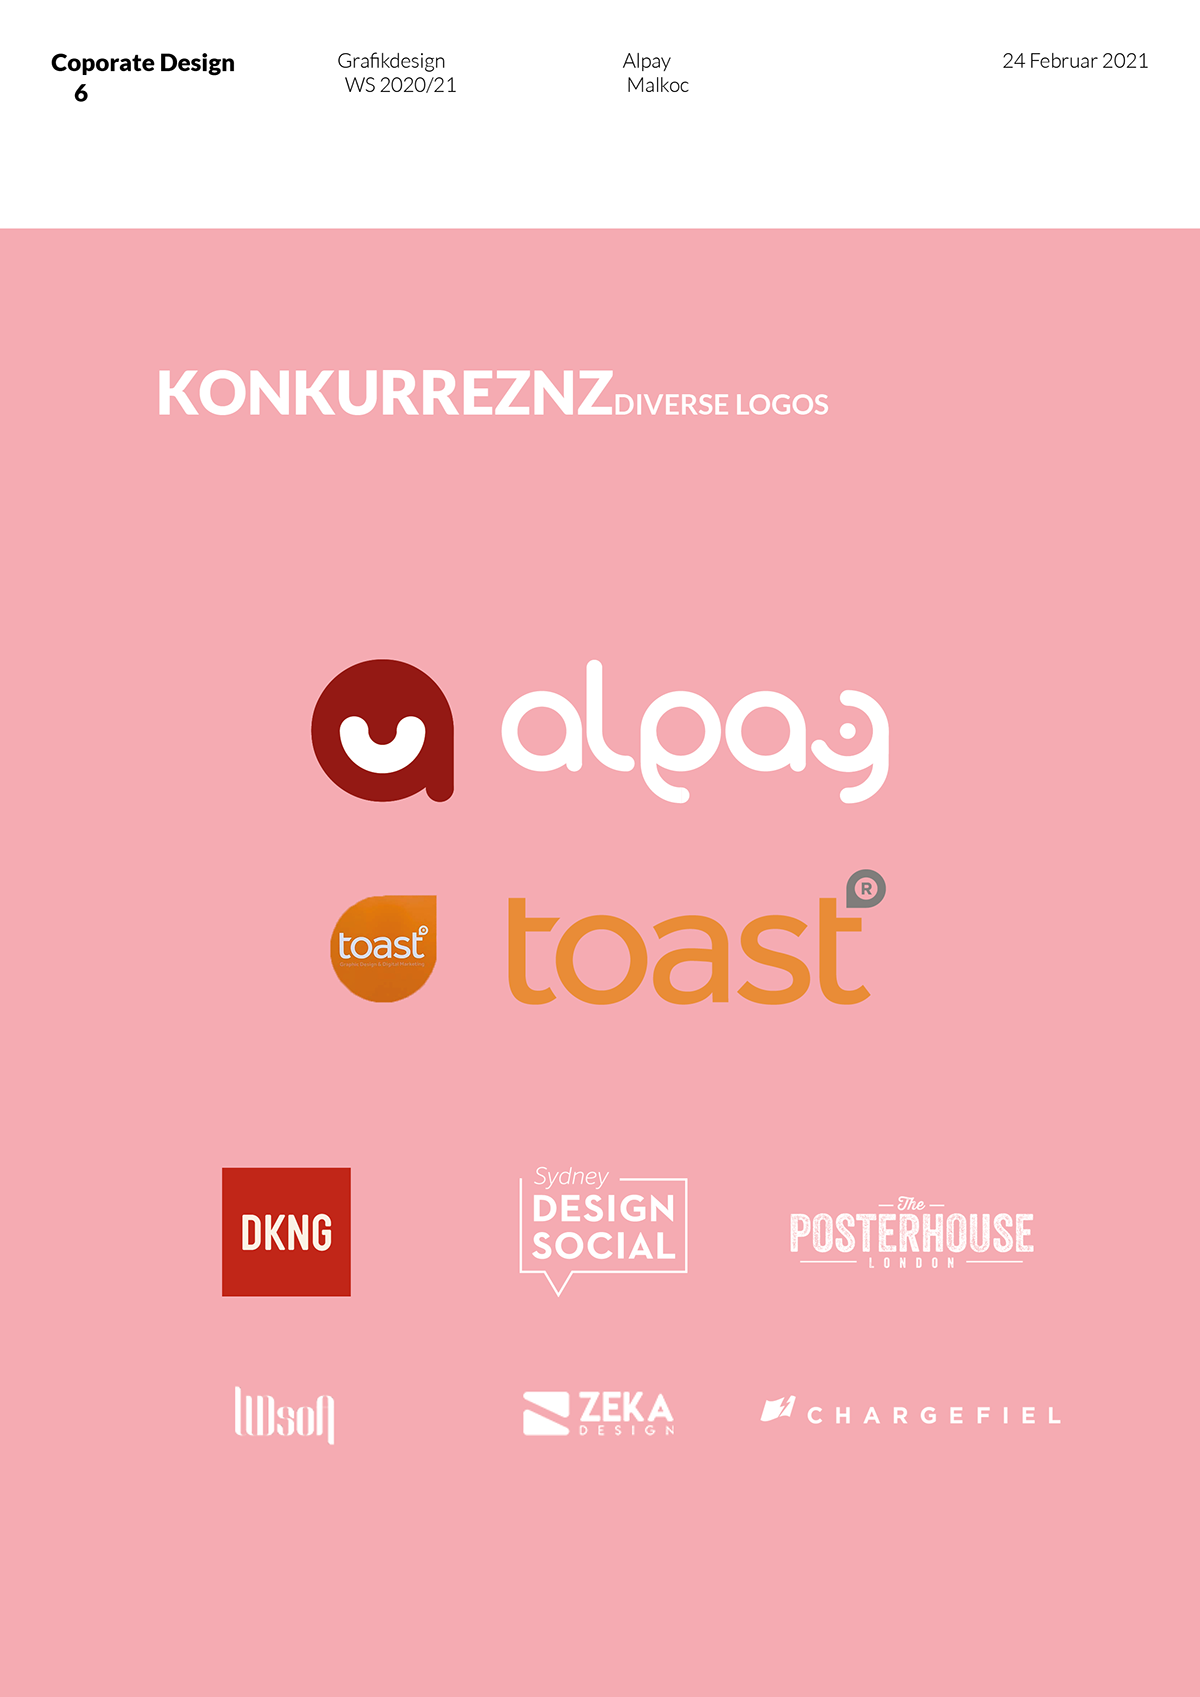 branding  communicationdesign Corporate Design design invoice sheet letterhead logo print